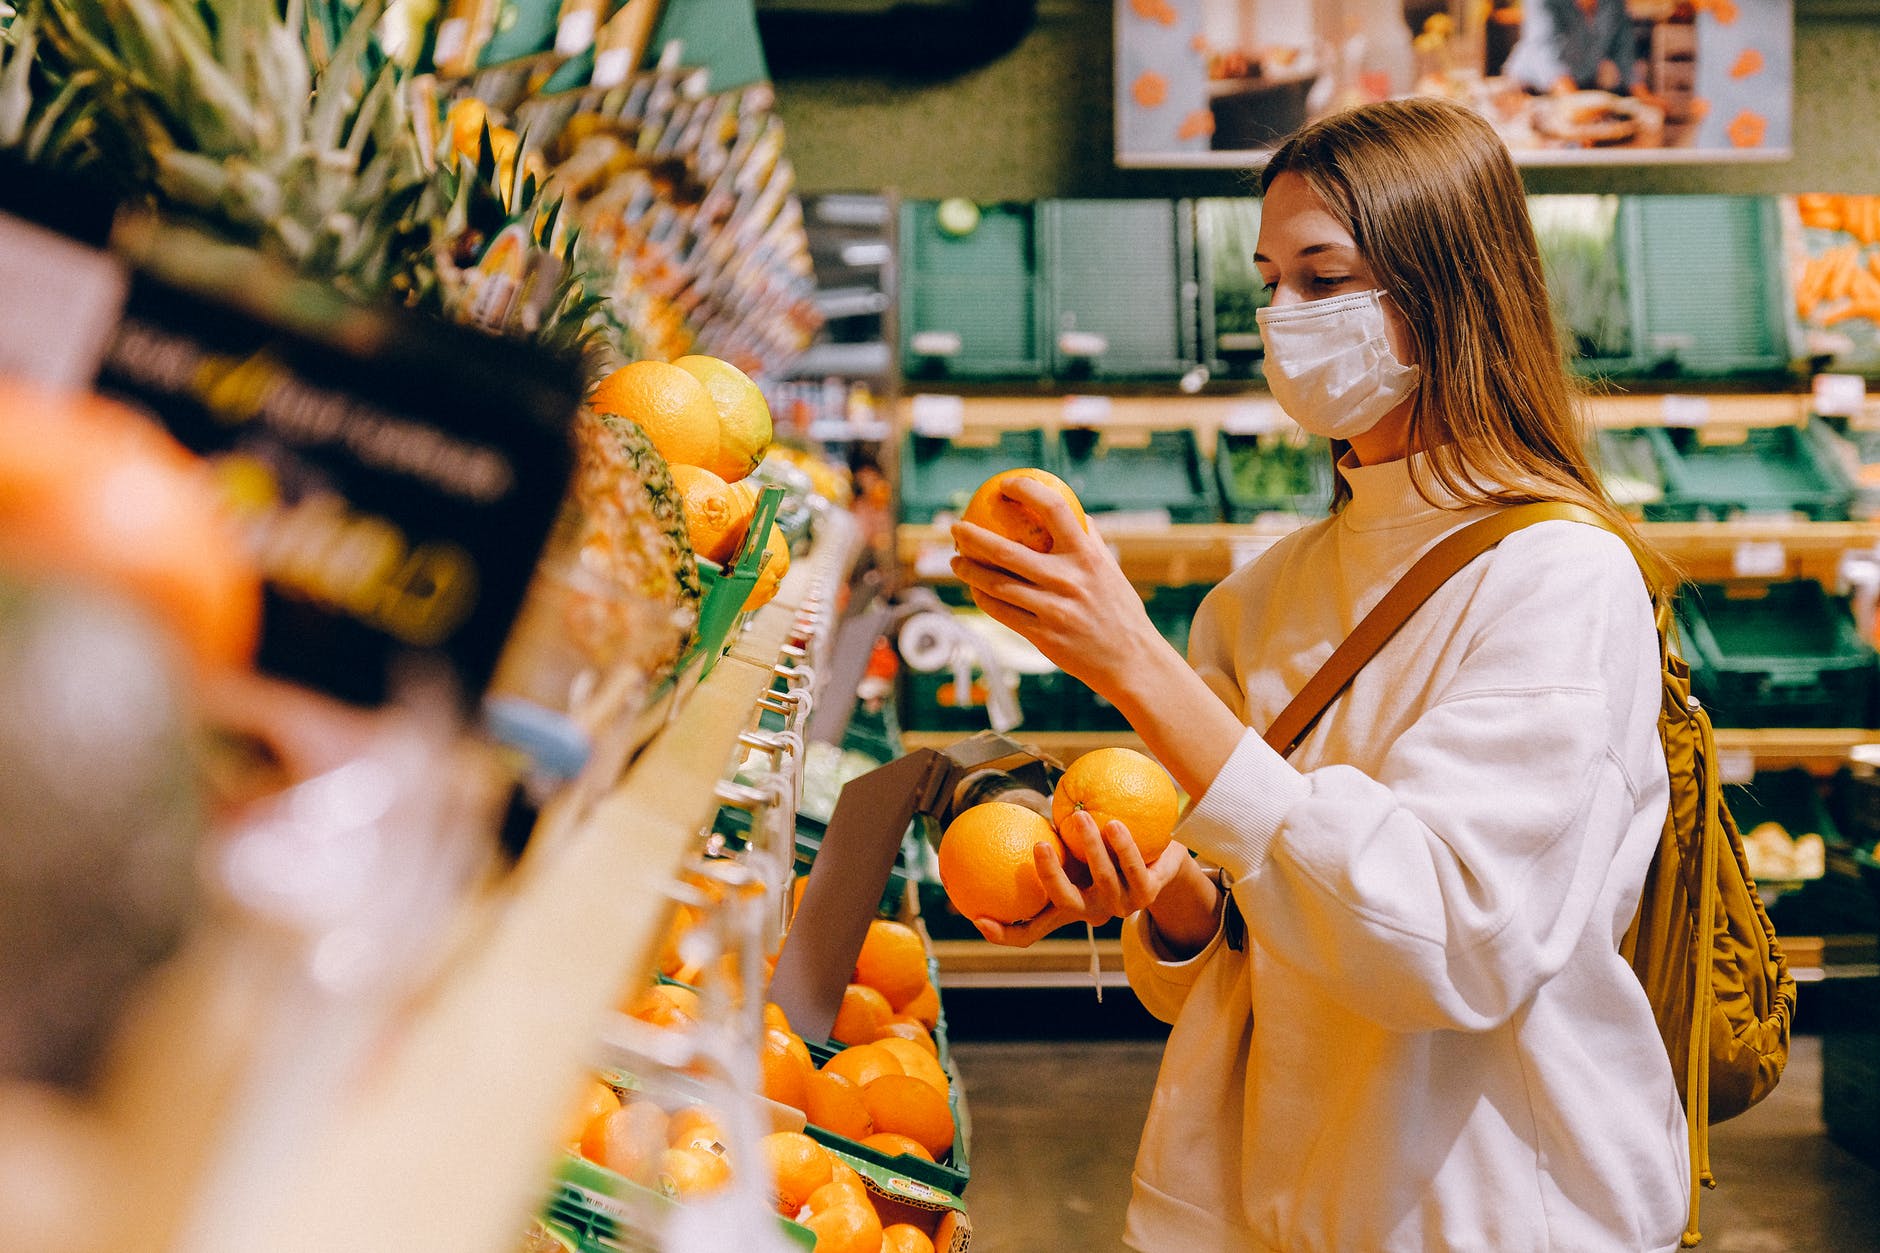 woman wearing mask in supermarket